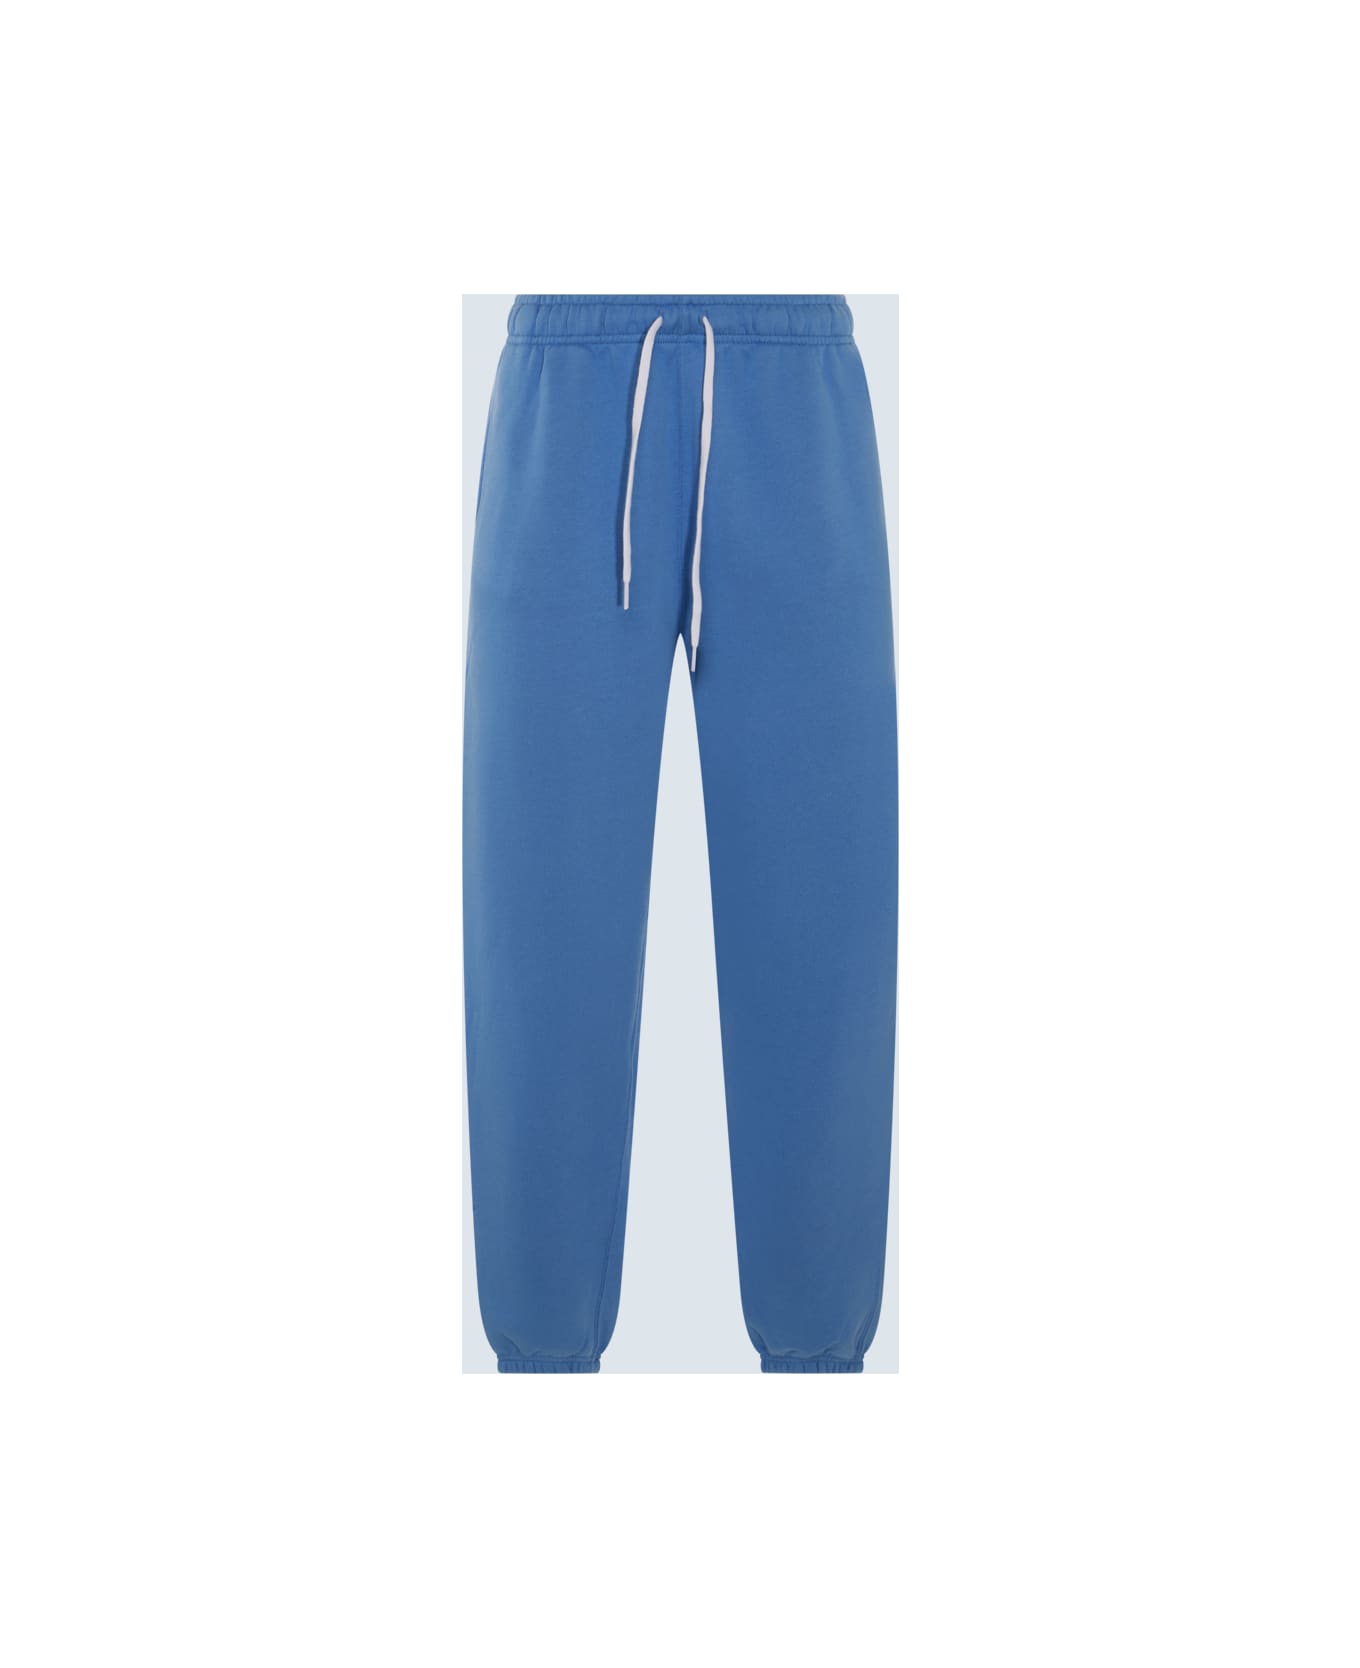 Polo Ralph Lauren Summer Blue Cotton Blend Track Pants - SUMMER BLUE